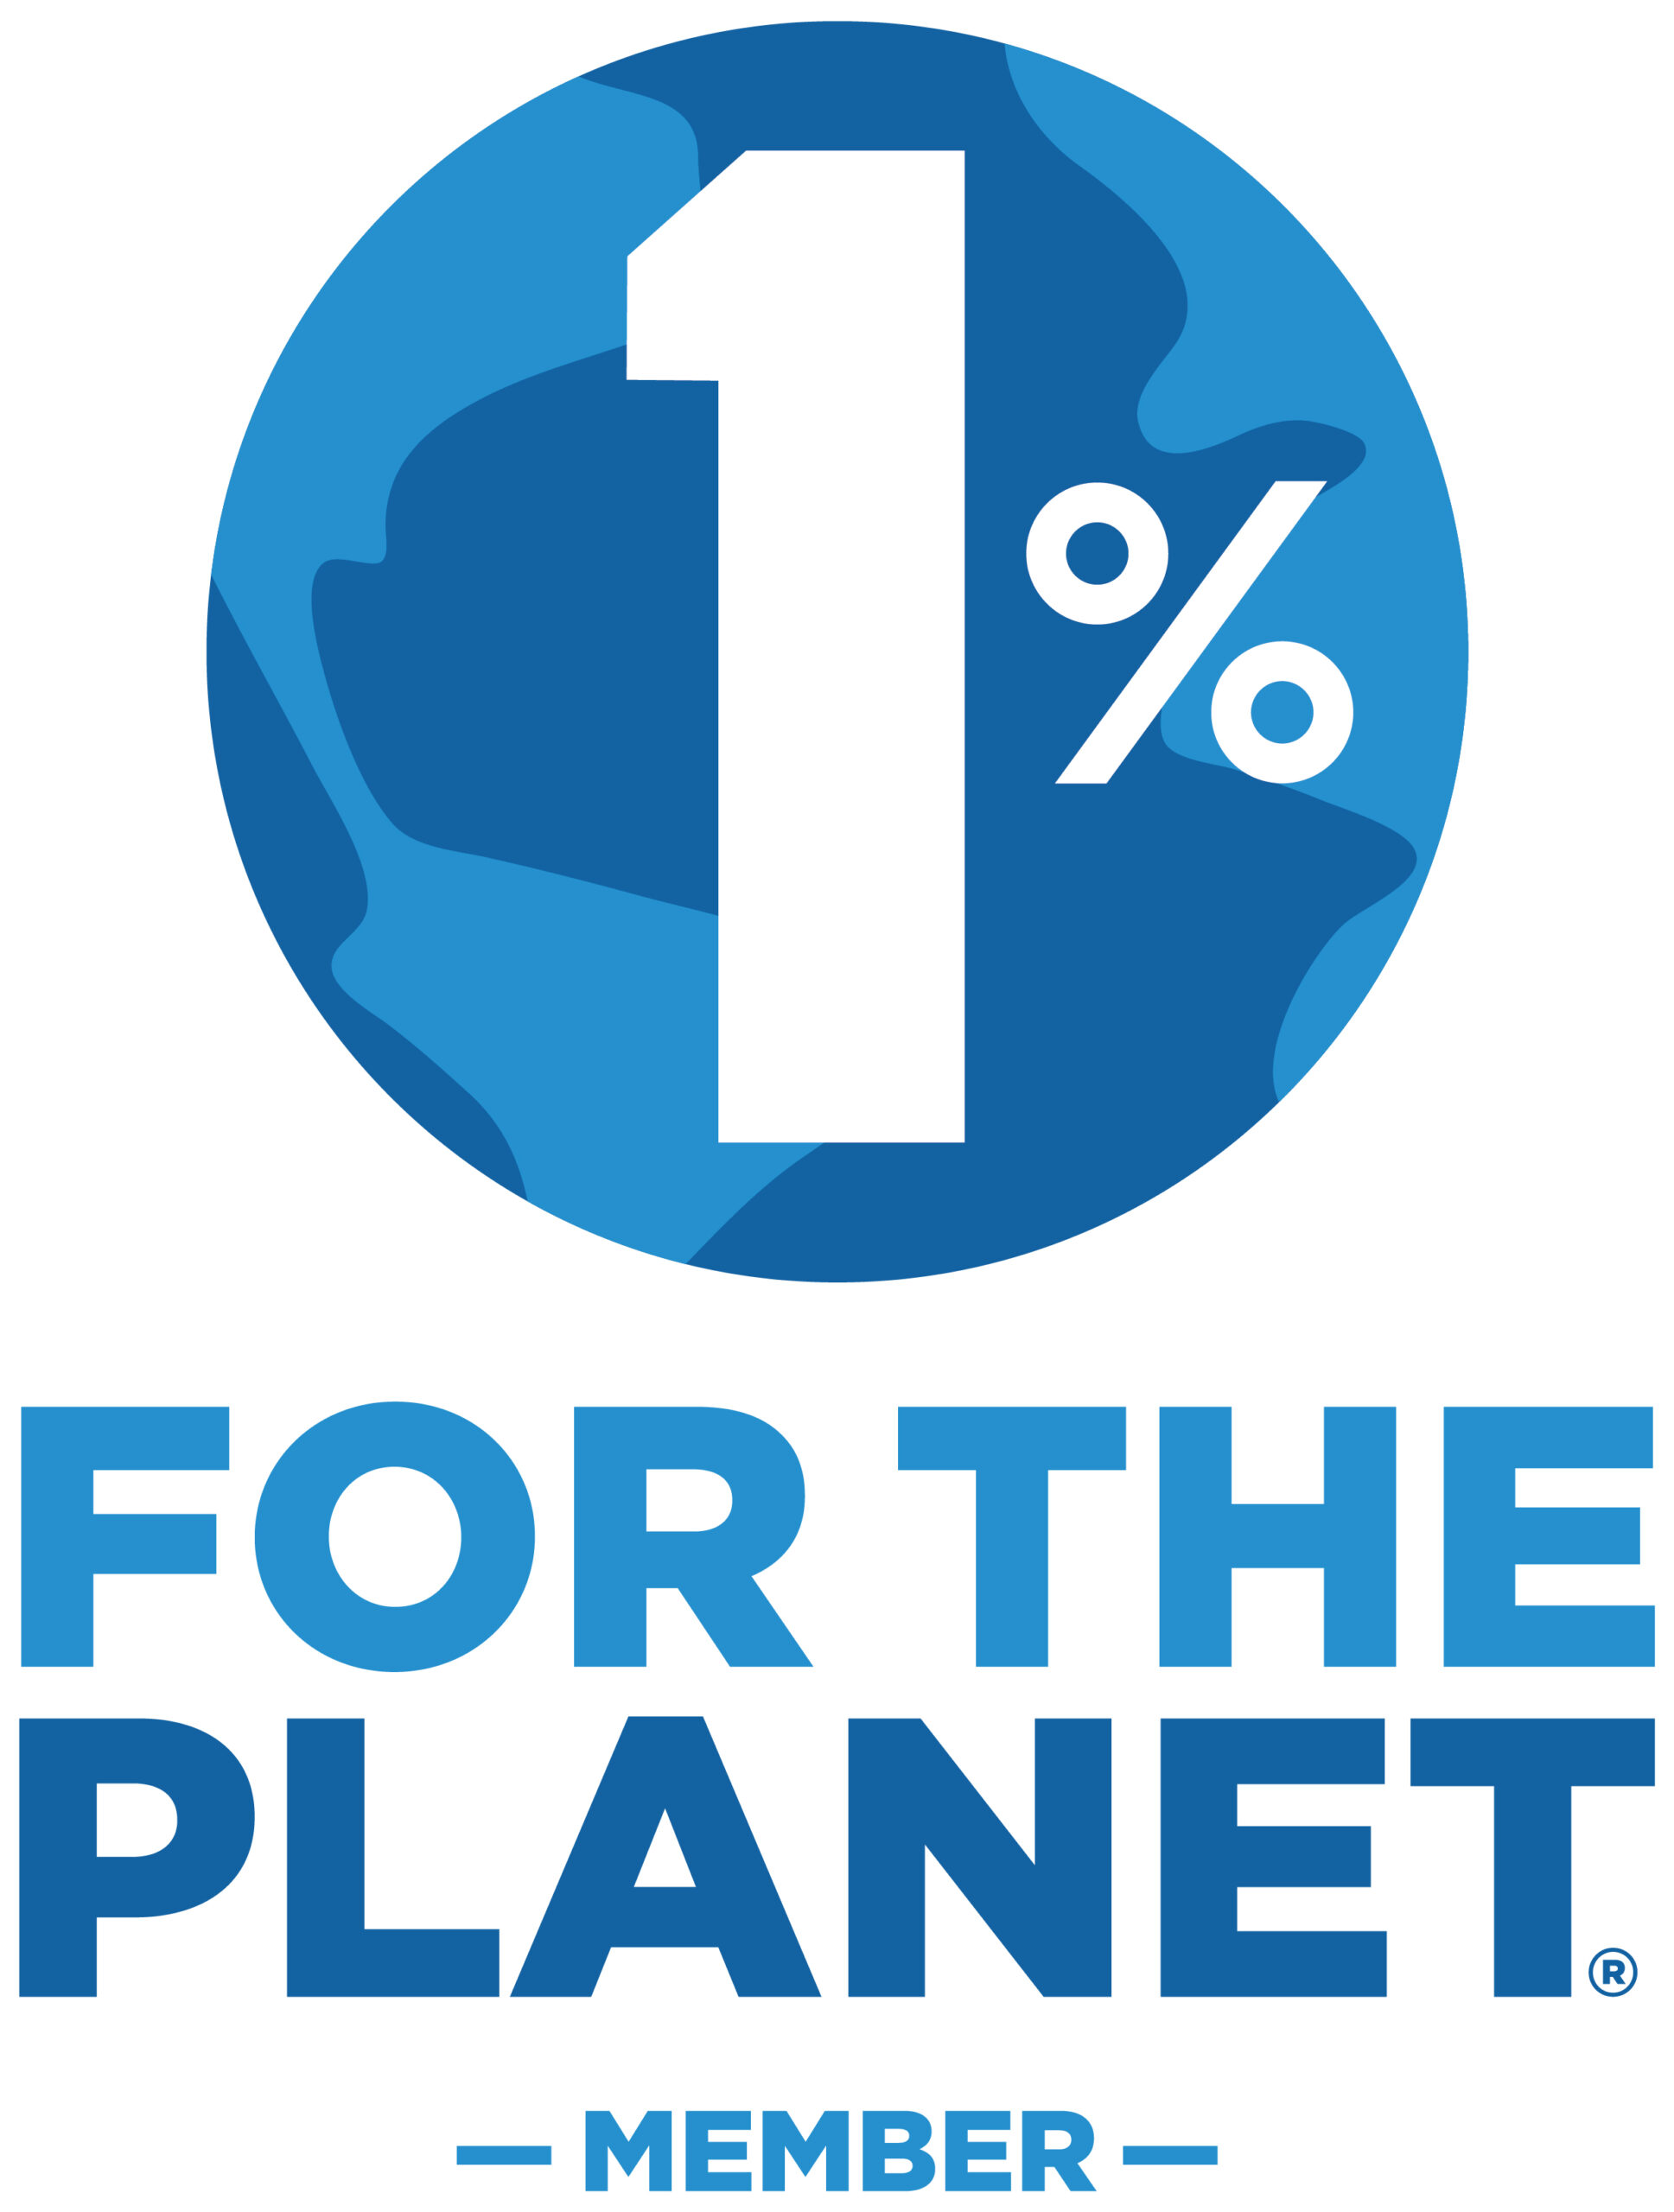 1% for the planet member logo 